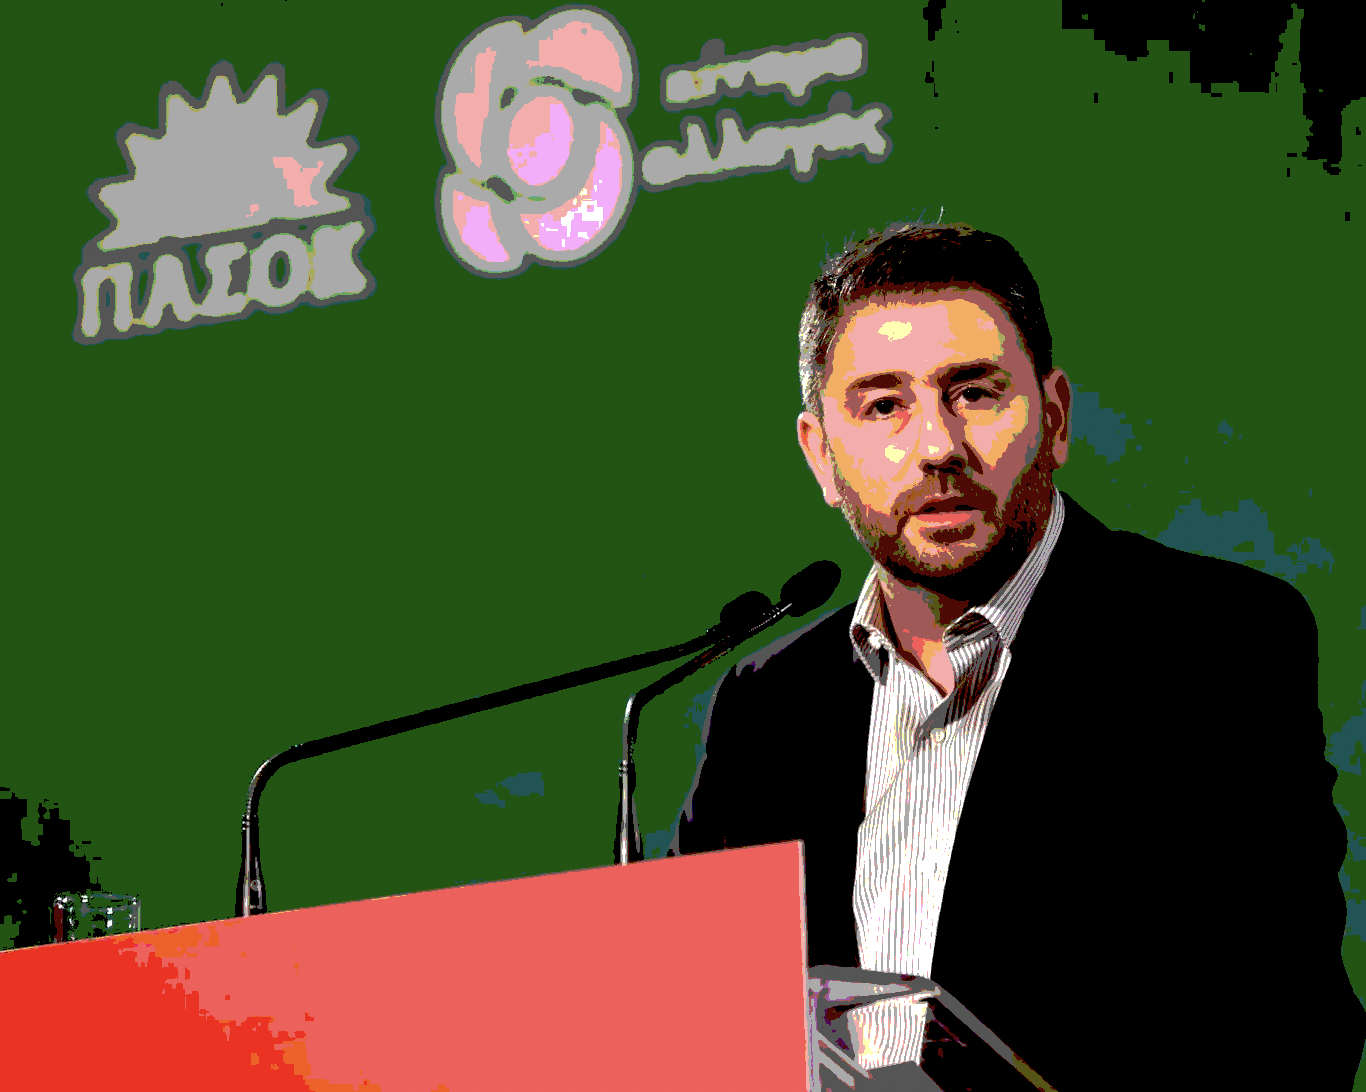 Ανδρουλάκης: Να σταματήσει η Τουρκία παράνομα αφηγήματα για αποστρατικοποίηση νησιών